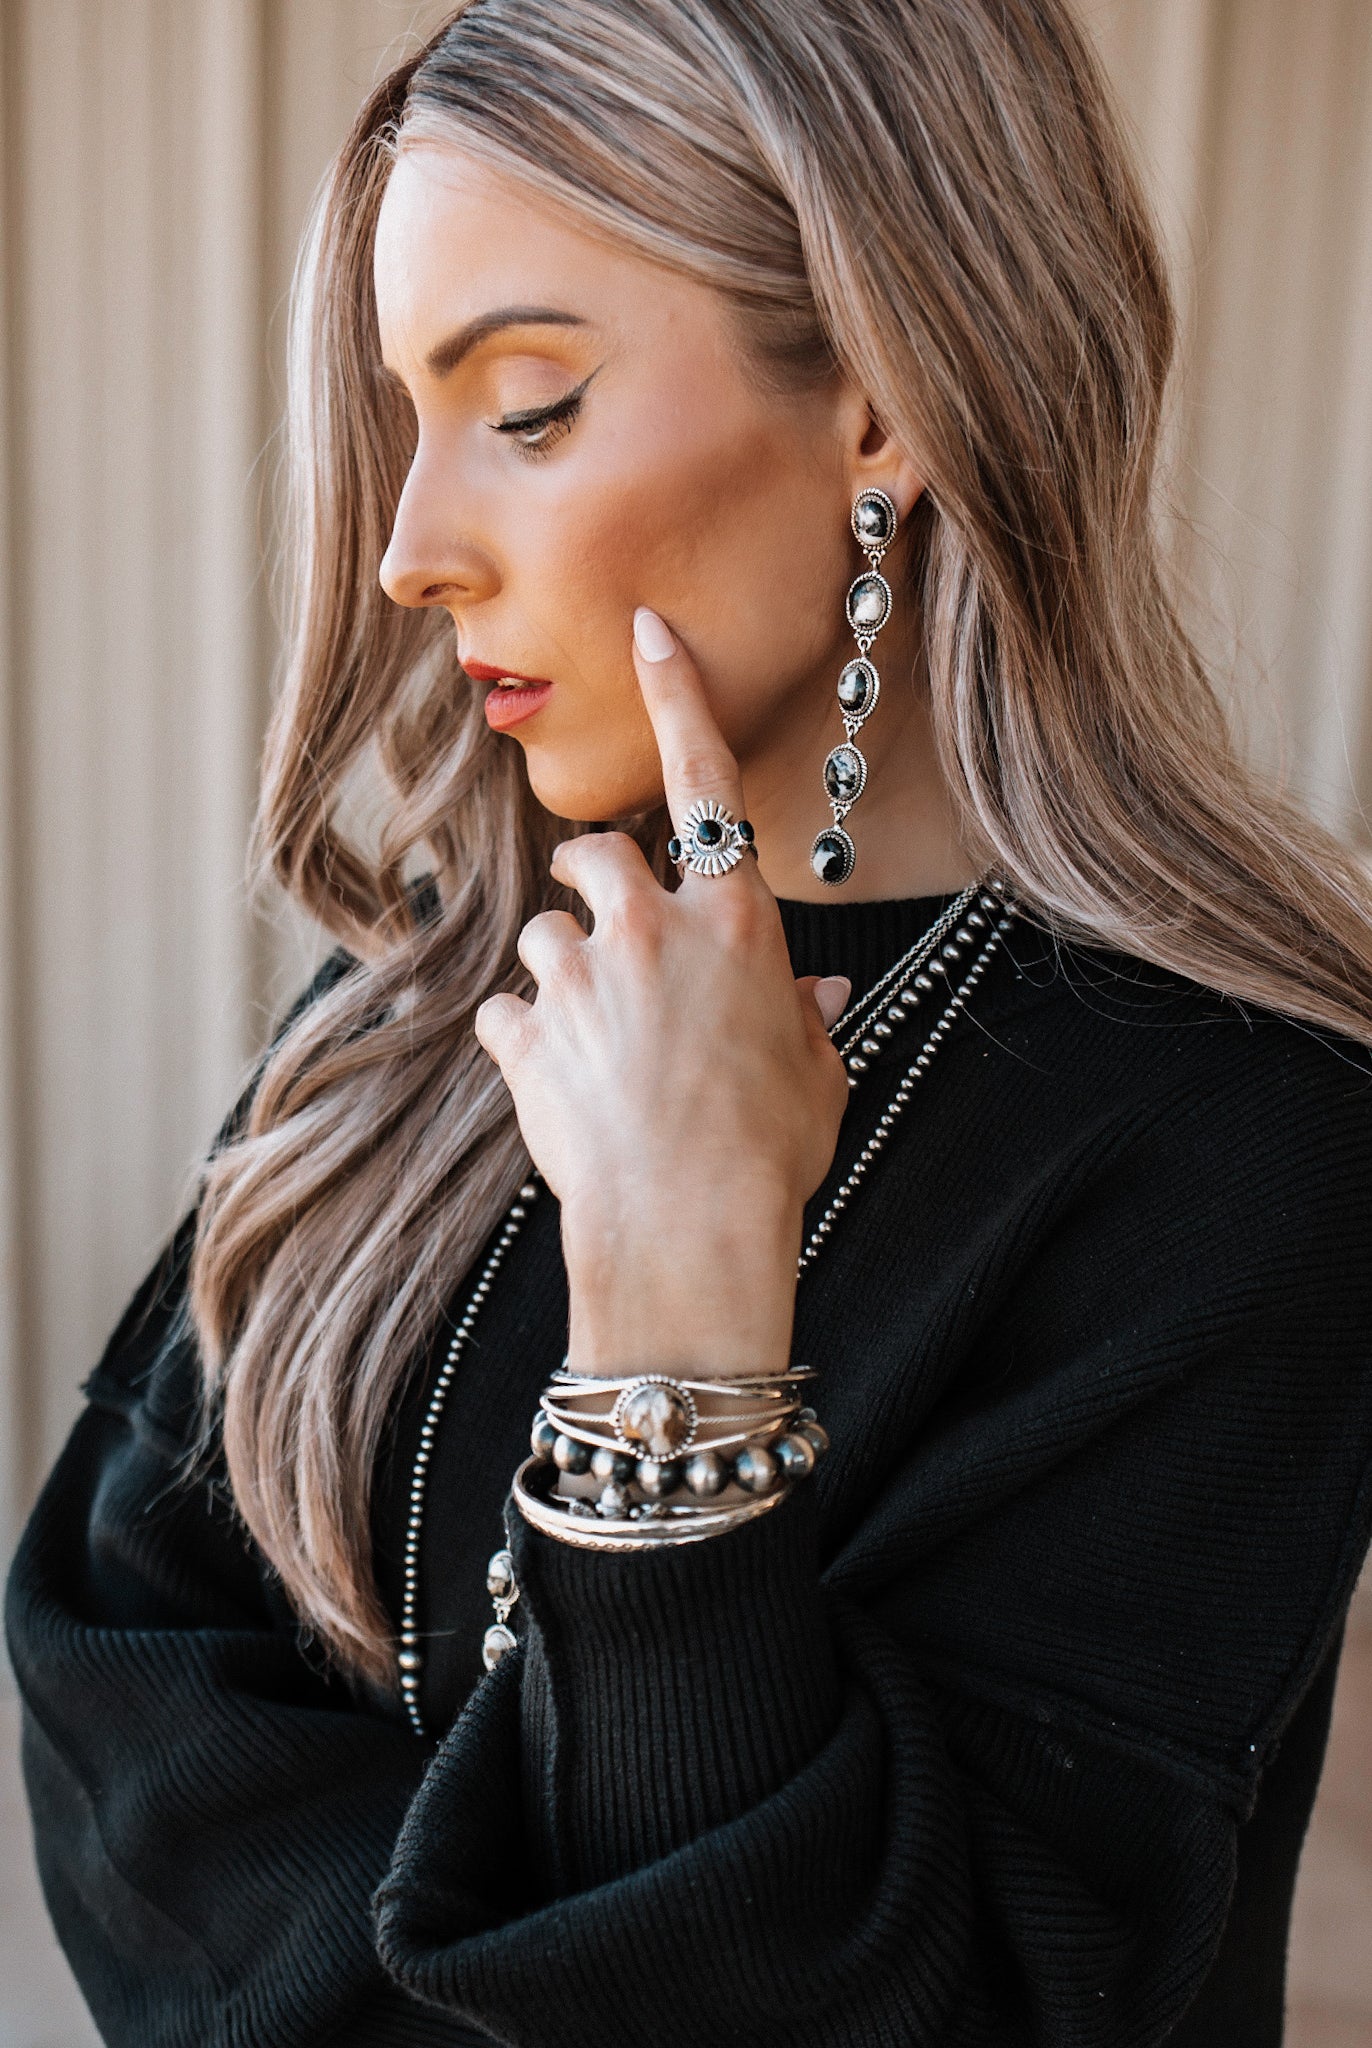 Vintage Boho White Buffalo Stone Drop Earrings | PREORDER NOW OPEN-Earrings-Krush Kandy, Women's Online Fashion Boutique Located in Phoenix, Arizona (Scottsdale Area)